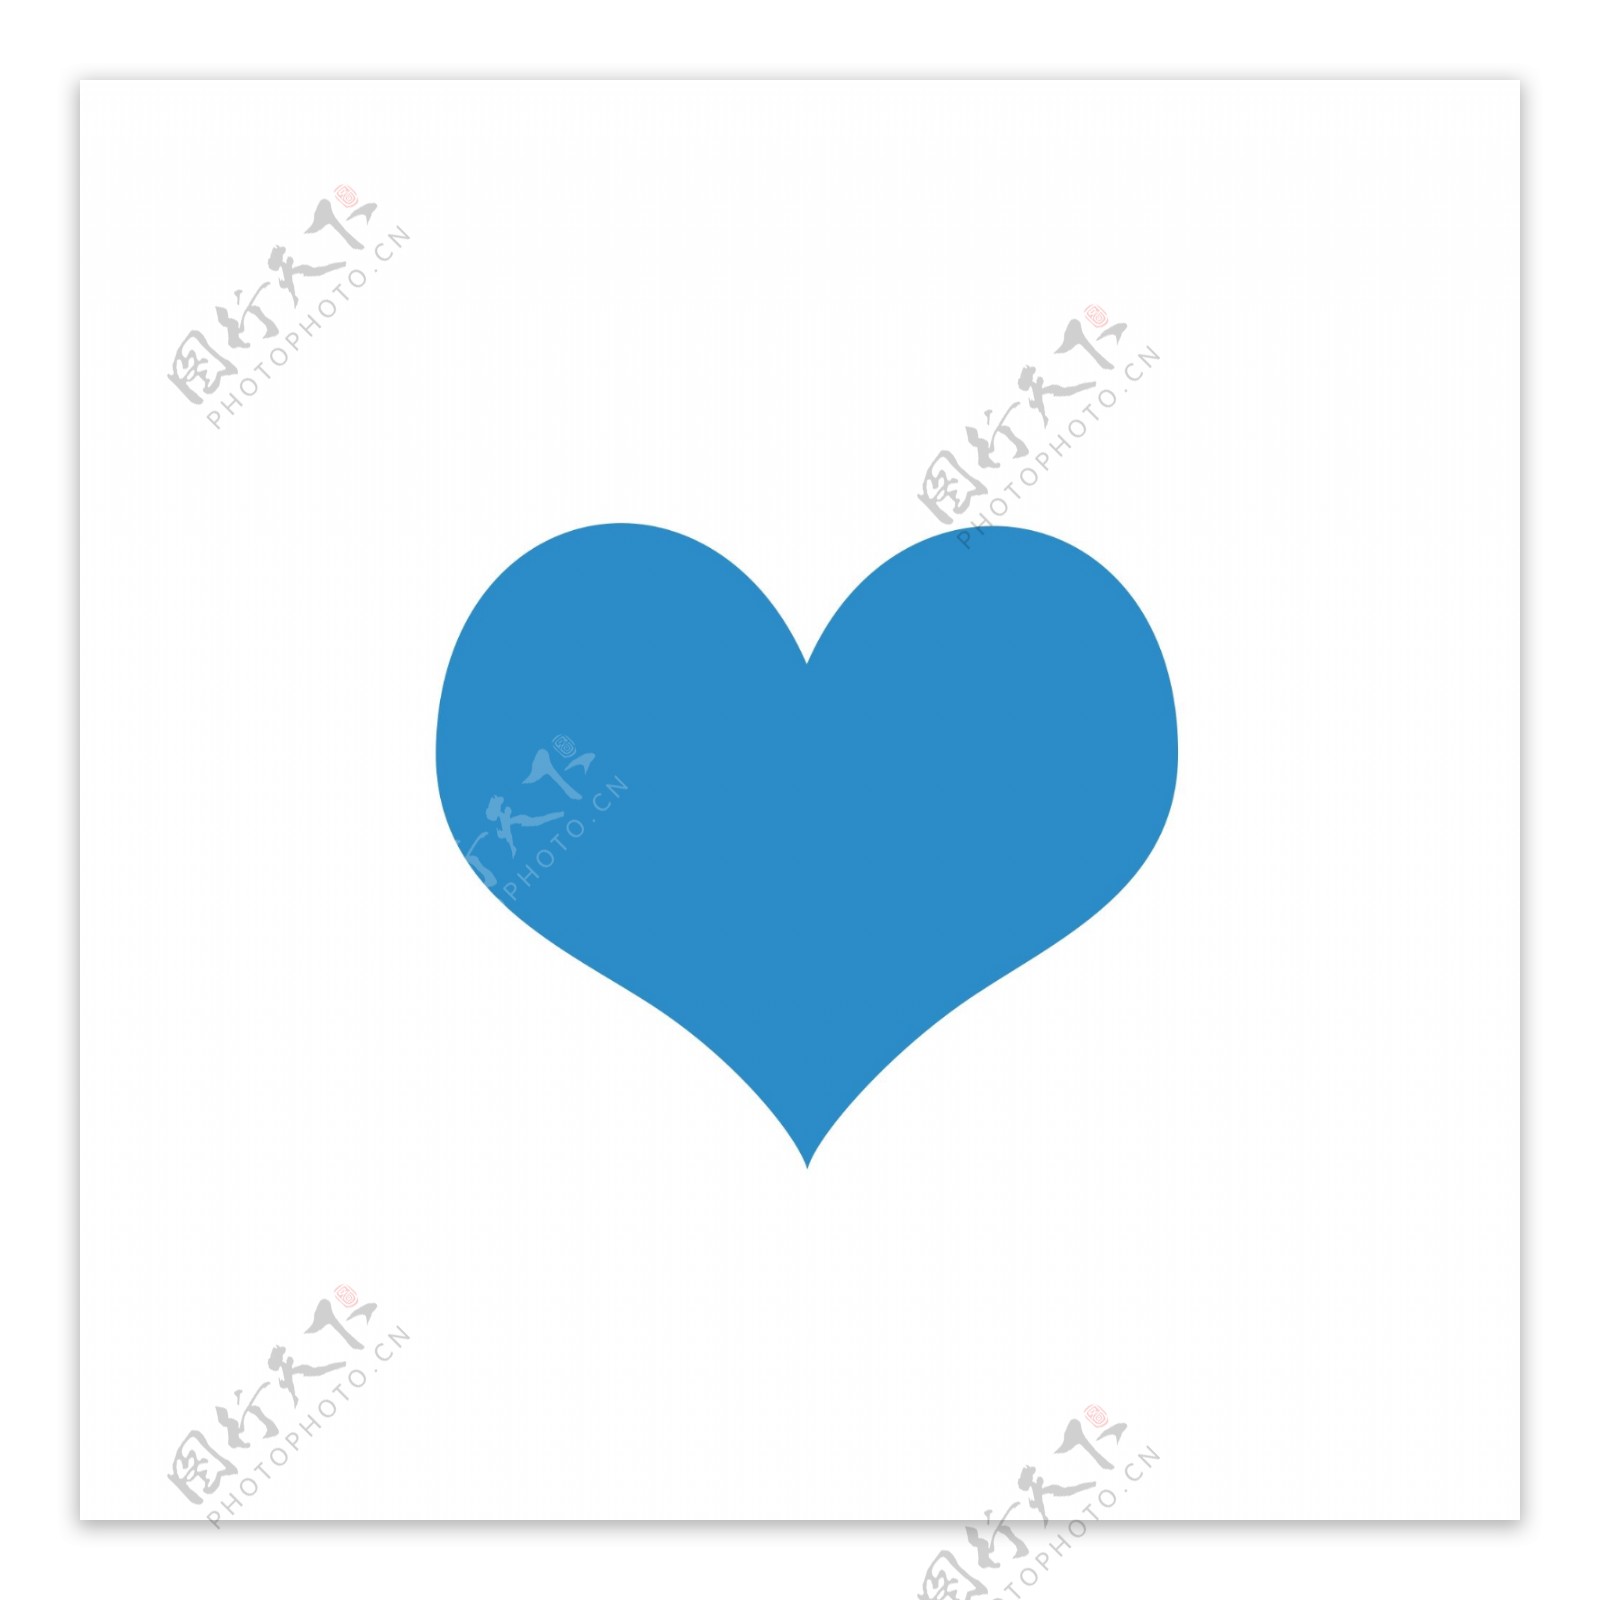 一个可爱的蓝色心形和花卉背景矢量图片素材-编号04178372-图行天下